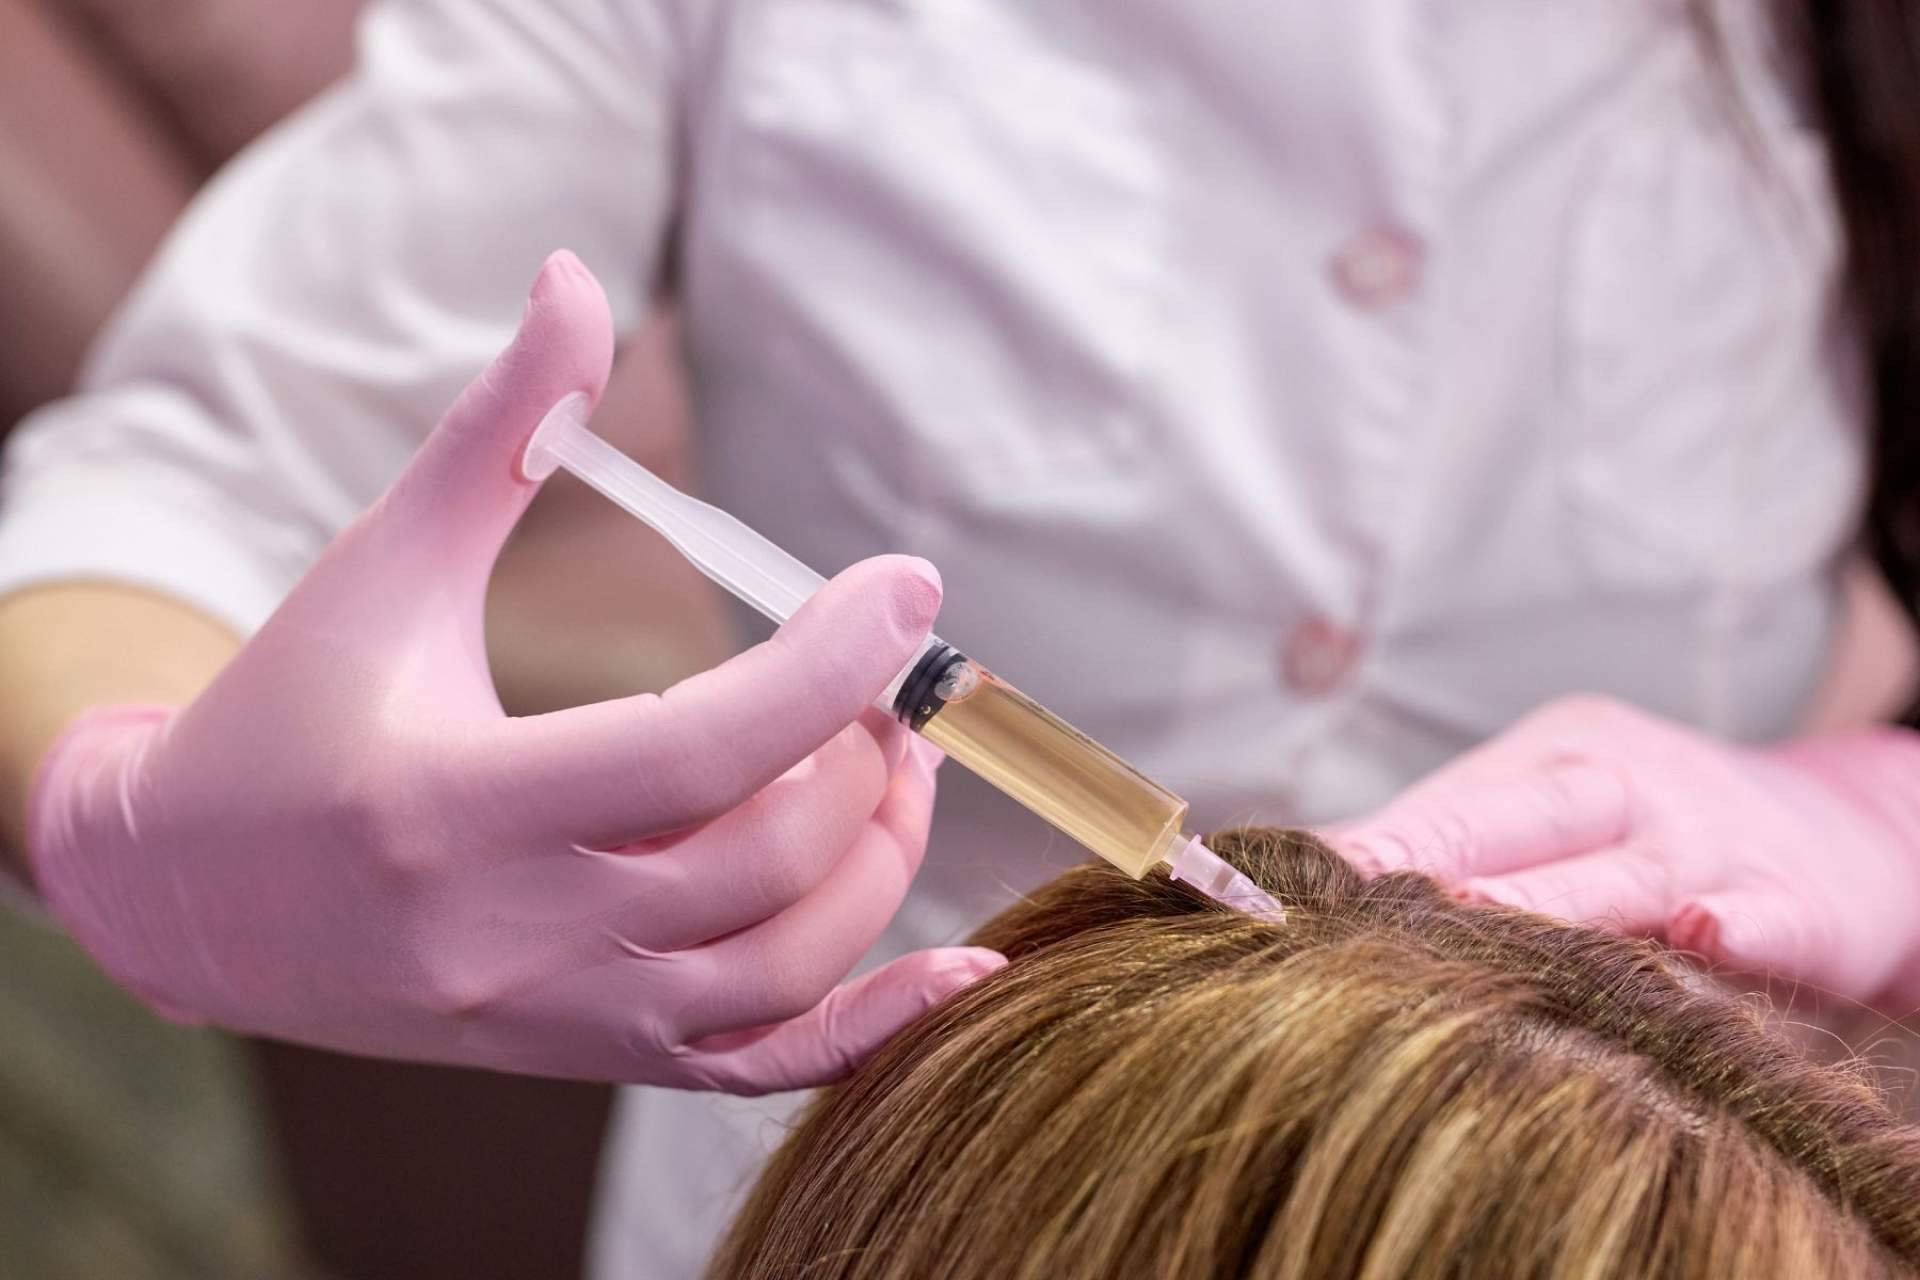  Tratamiento de mesoterapia capilar con fármacos para combatir la alopecia femenina y masculina 